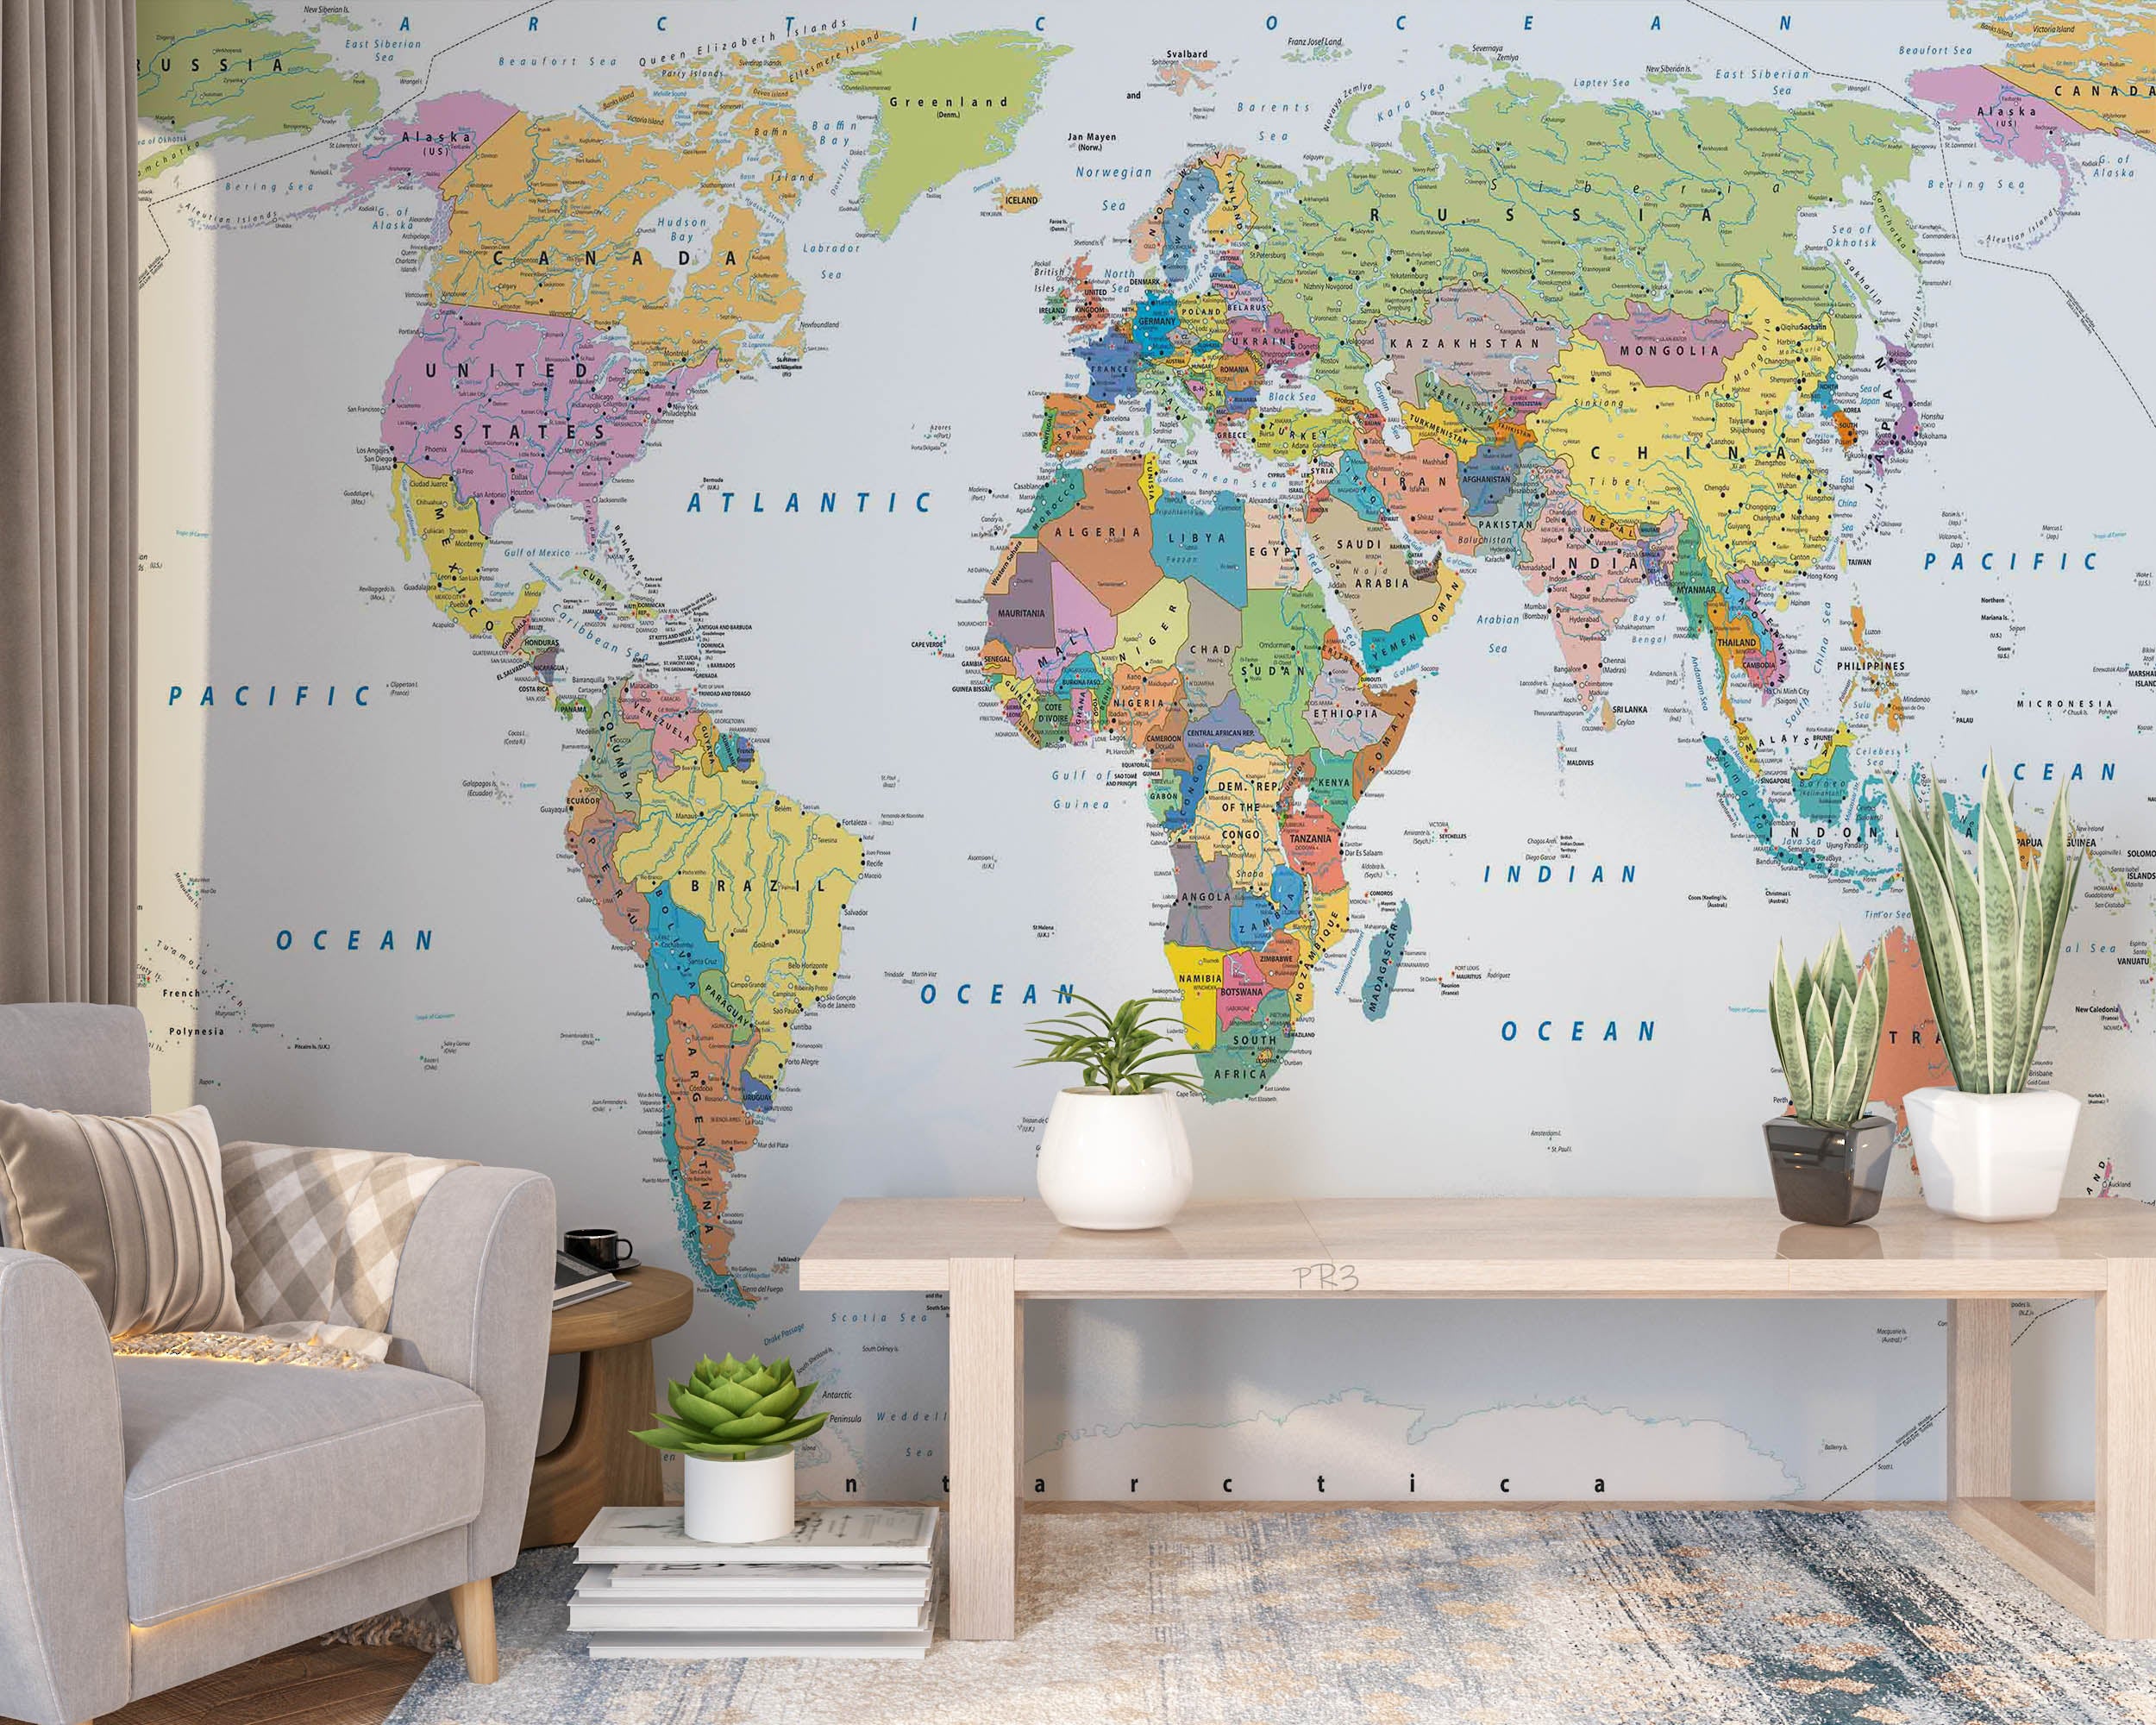 3D Detailed World Map Wall Mural Wallpaper GD 3807- Jess Art Decoration